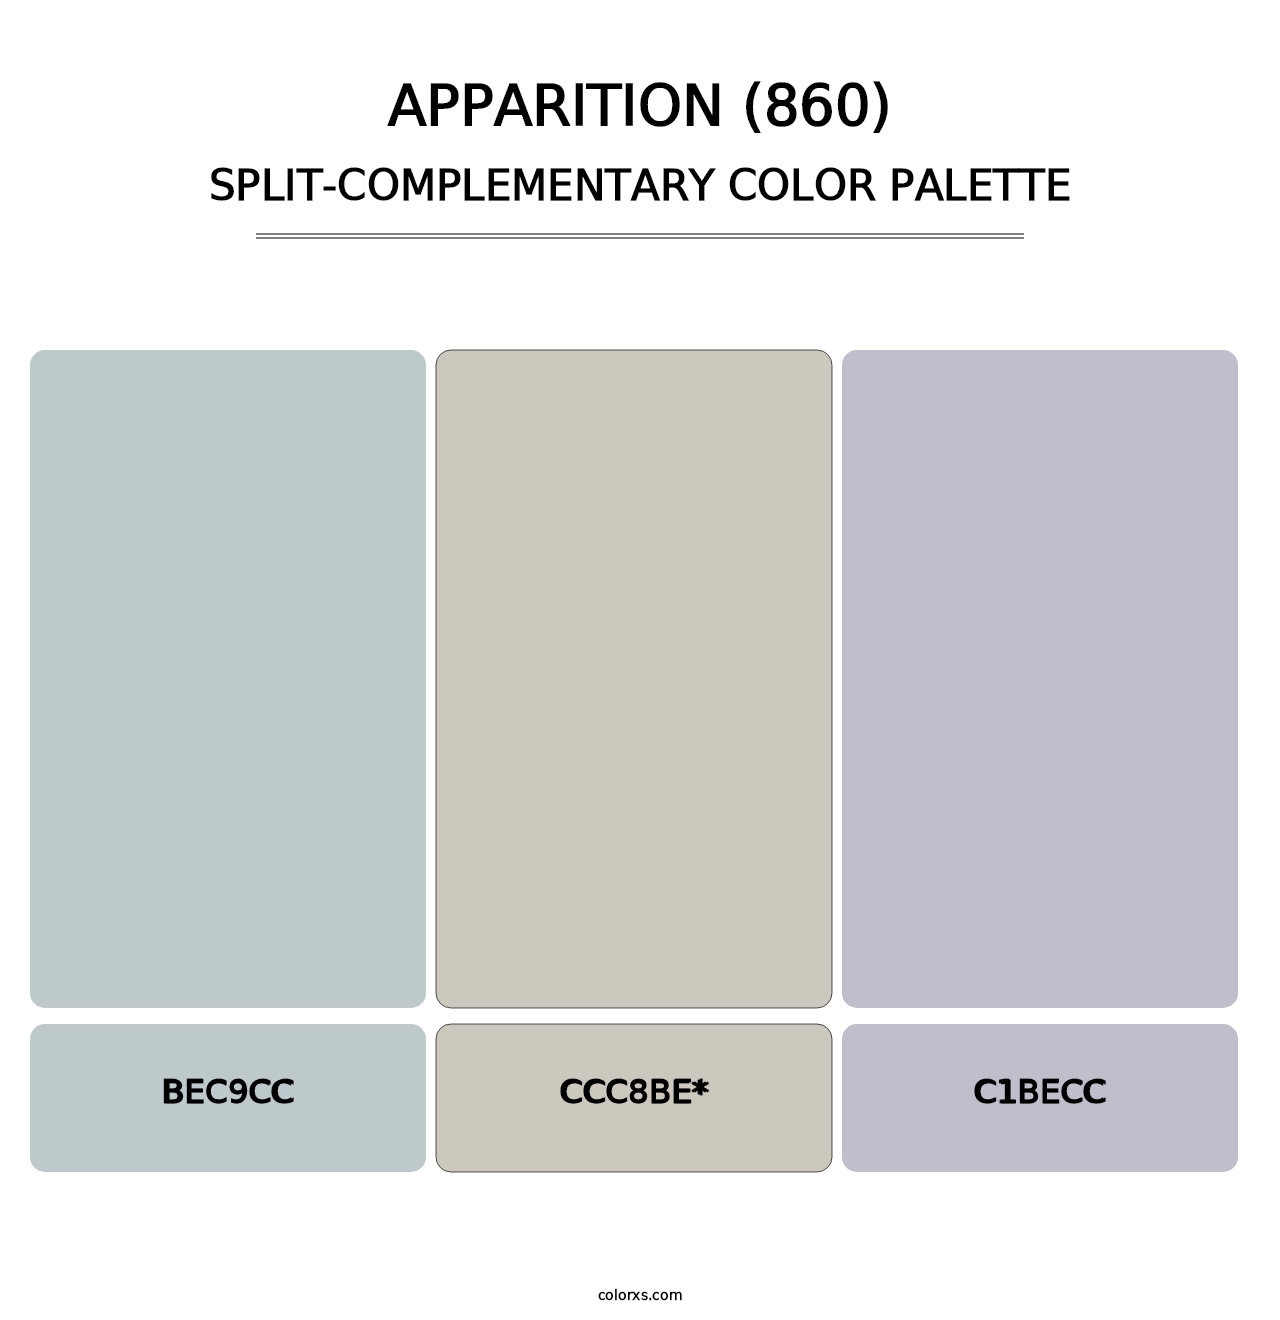 Apparition (860) - Split-Complementary Color Palette